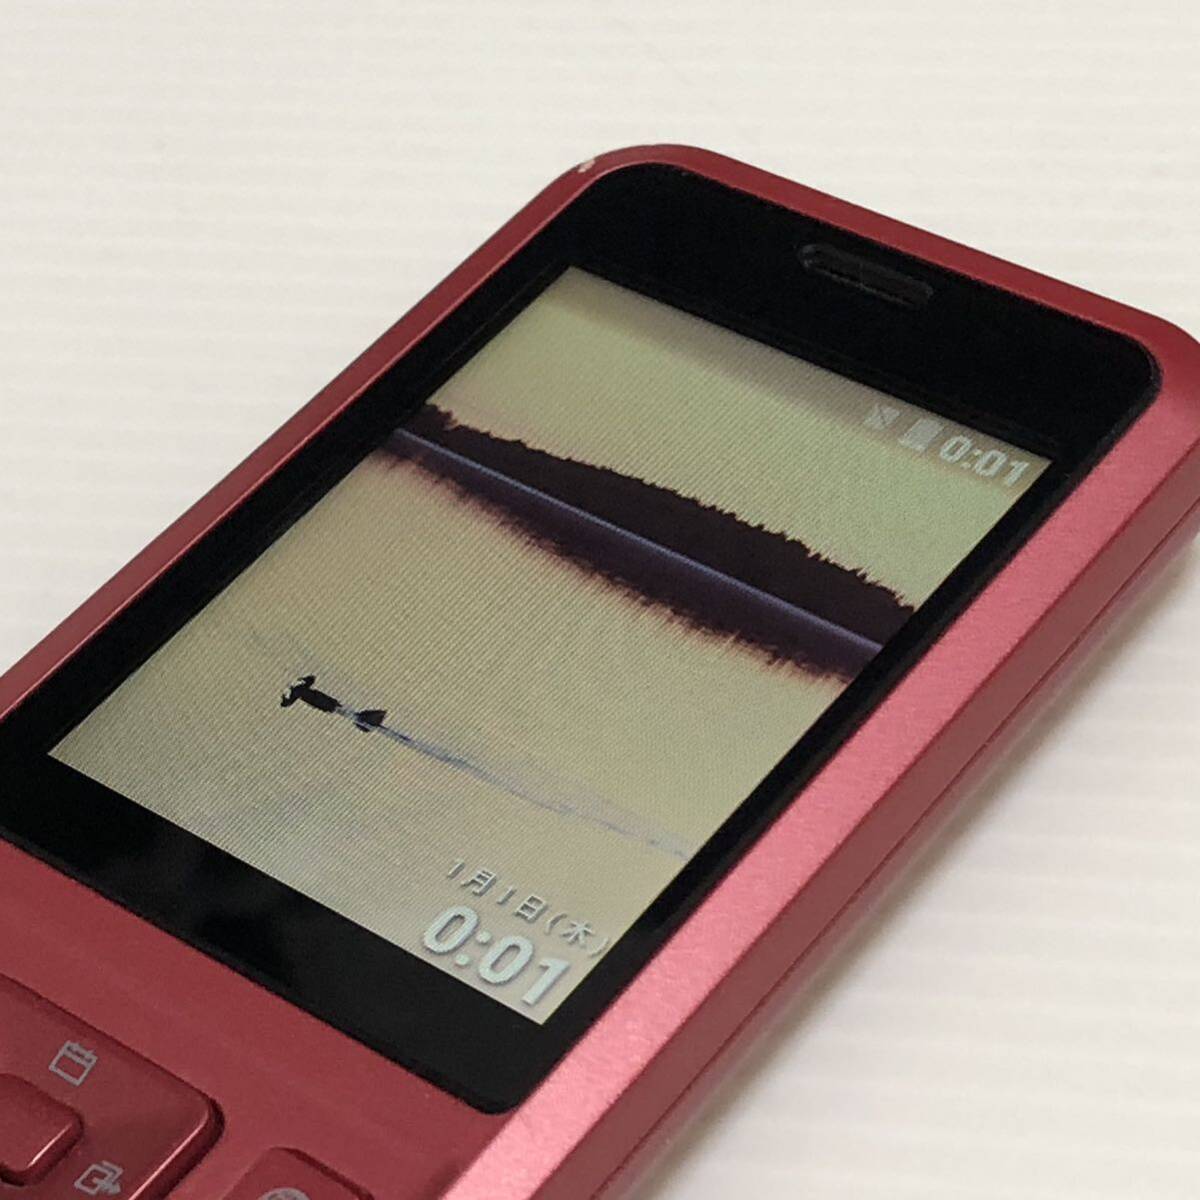 m282-1021-19 Simply мобильный телефон красный SoftBank ограничение использования 0galake-